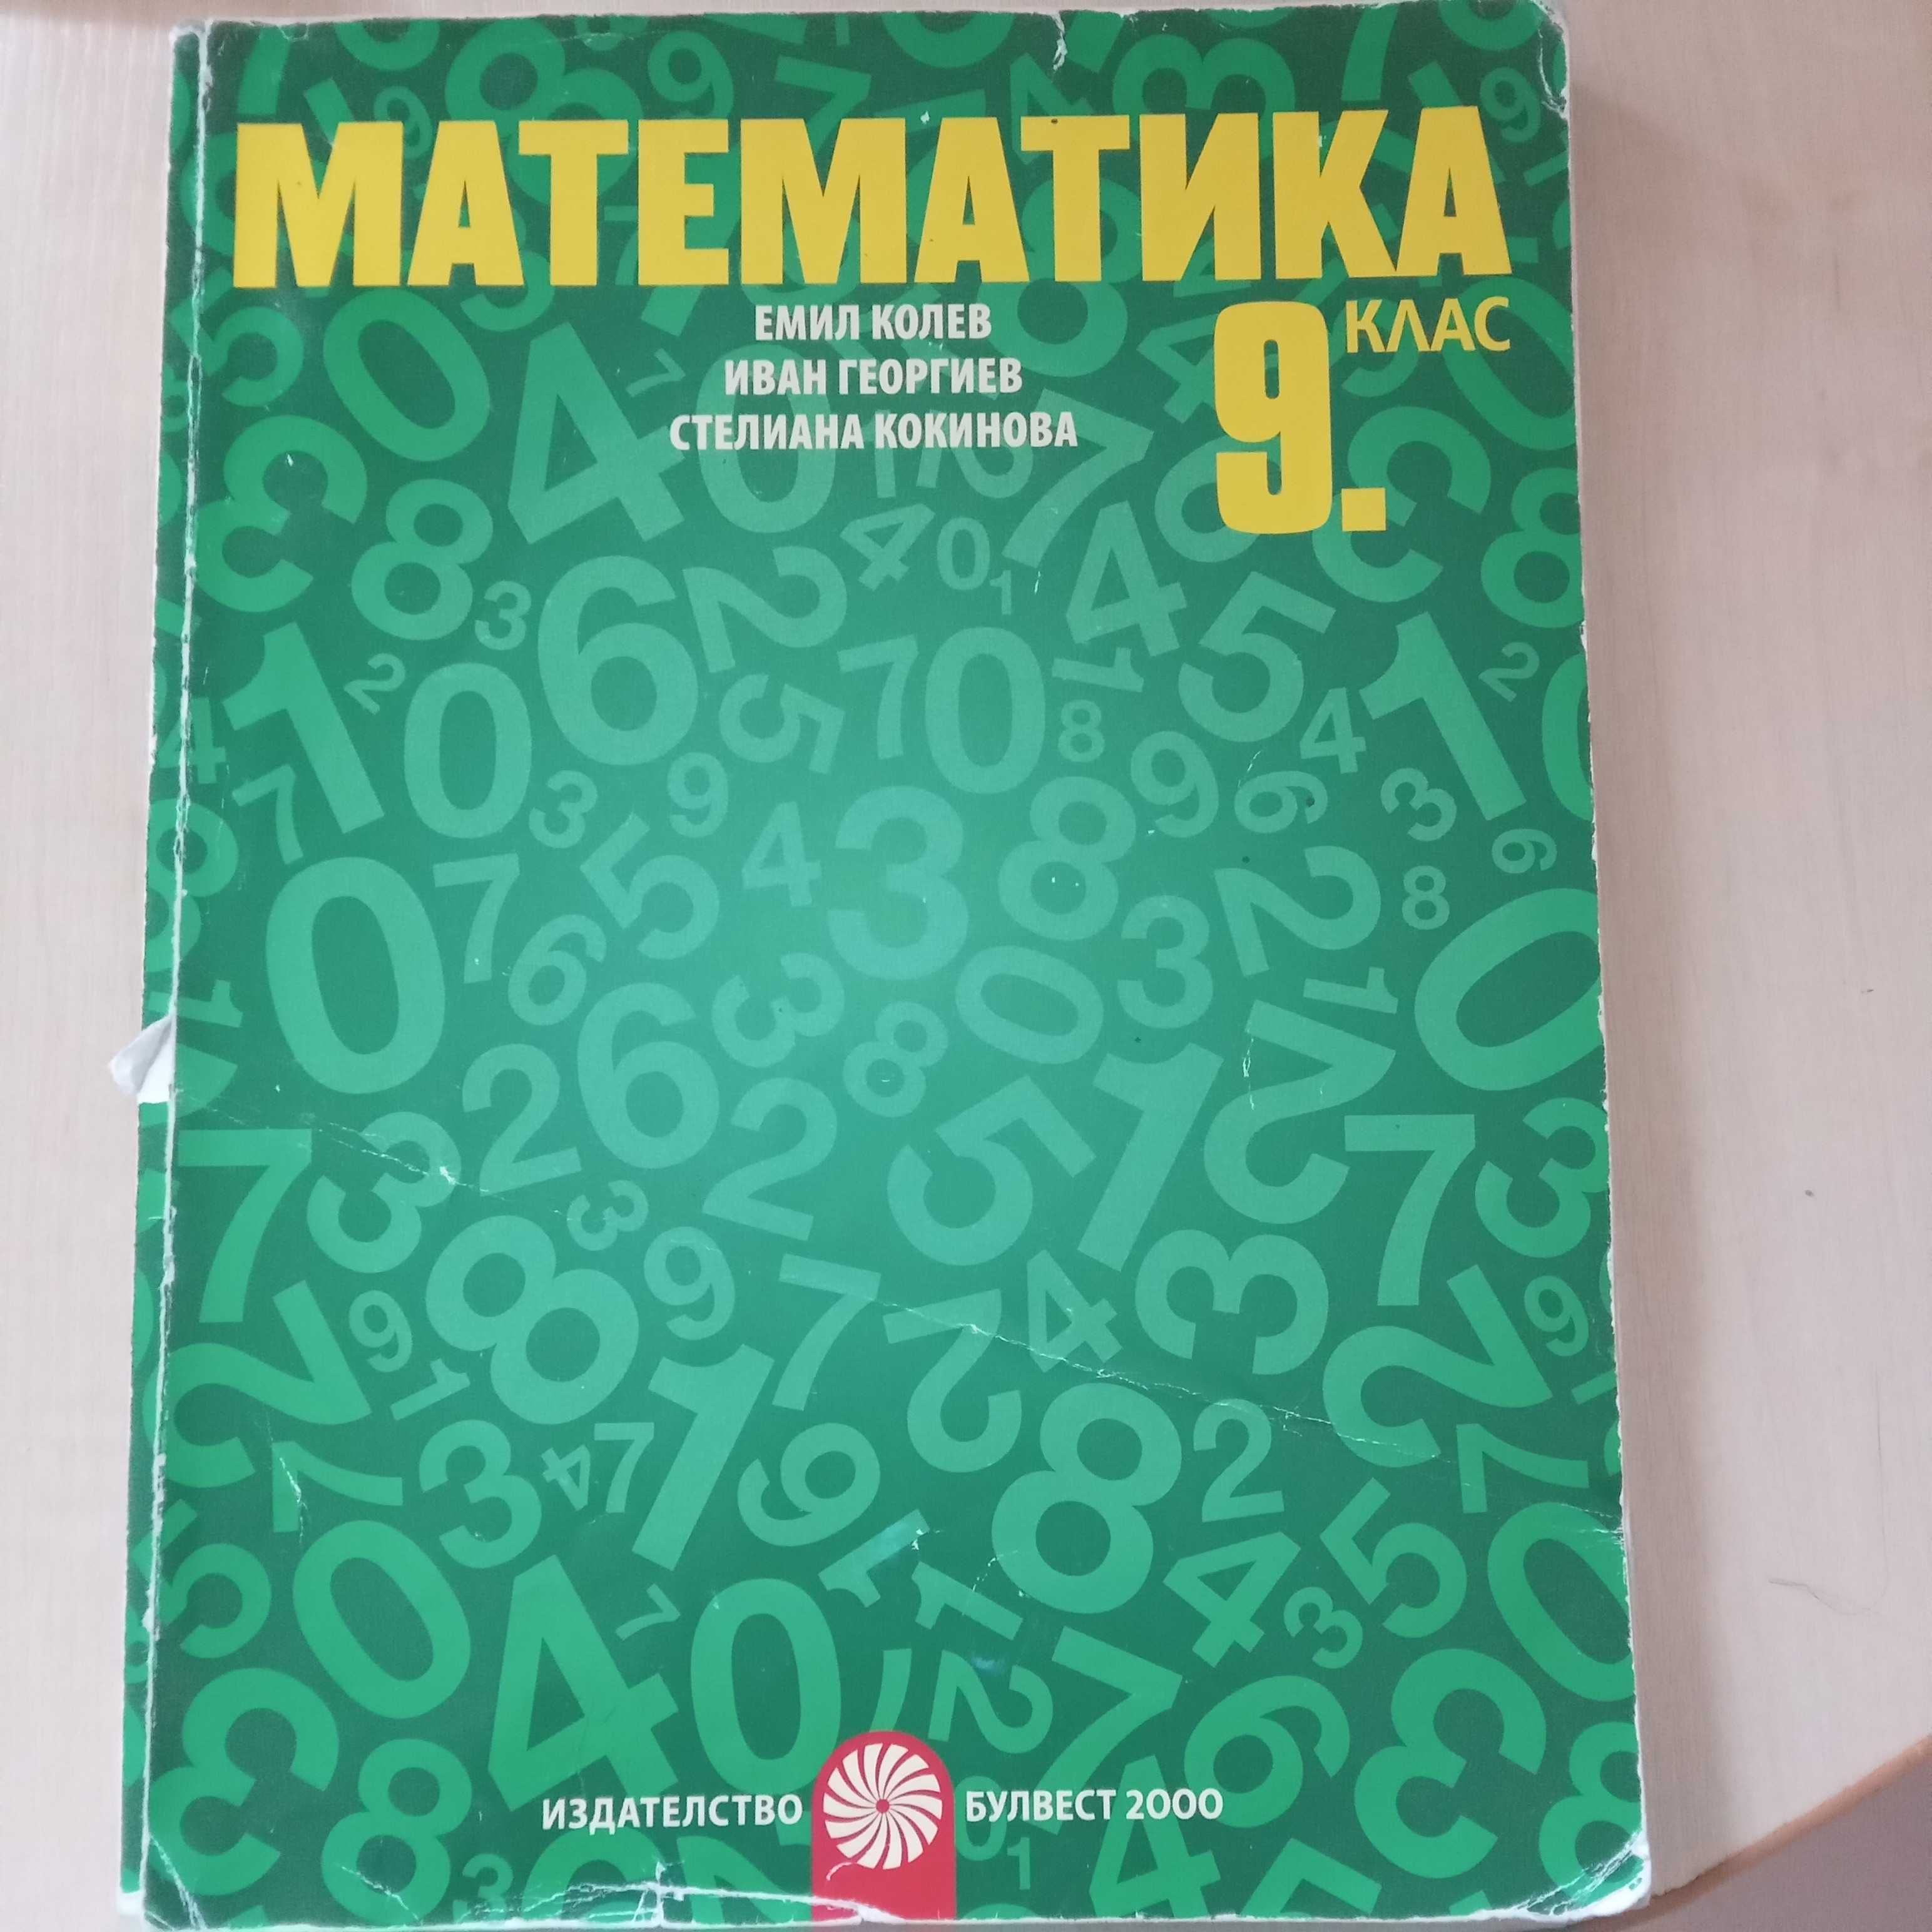 Учебници 9 клас - Информационни технологии, Математика, Български език